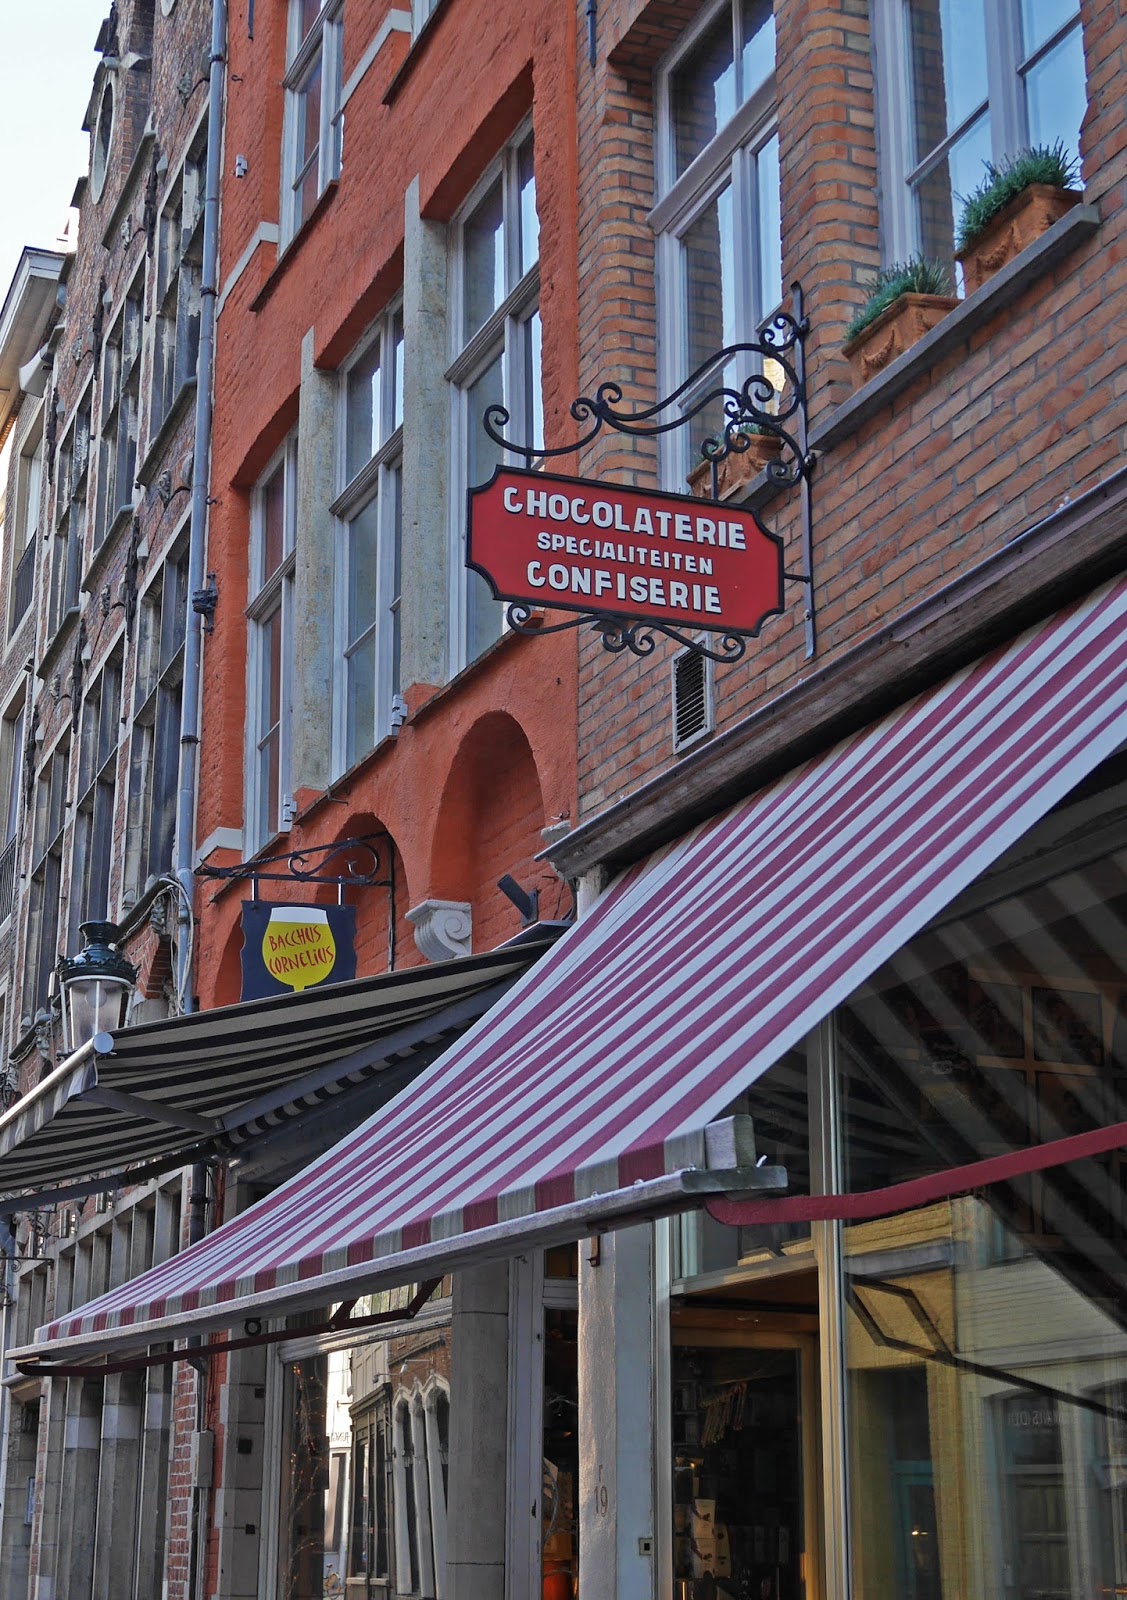 Chocolate shop in Bruges, Belgium